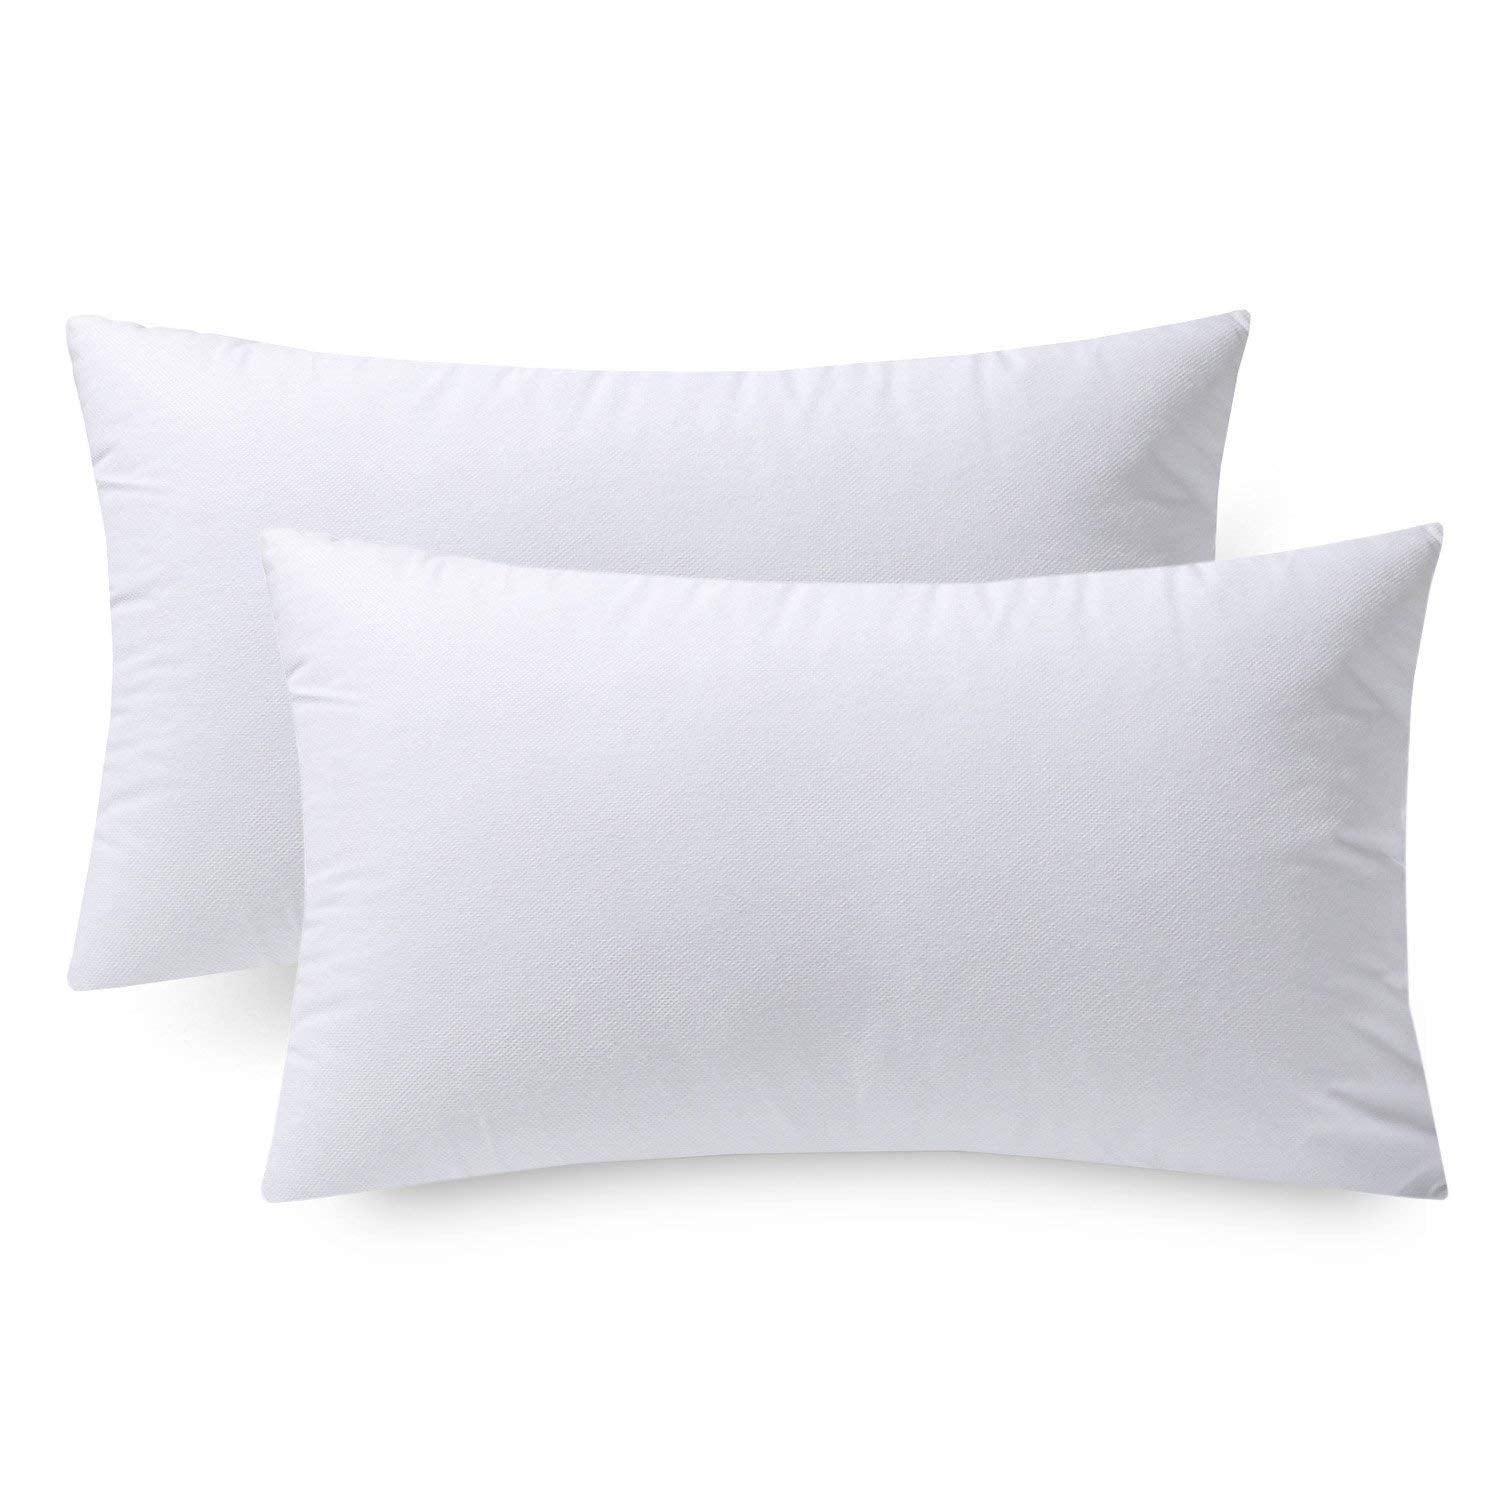 Soft Stuff Pillow Insert, Hobby Lobby